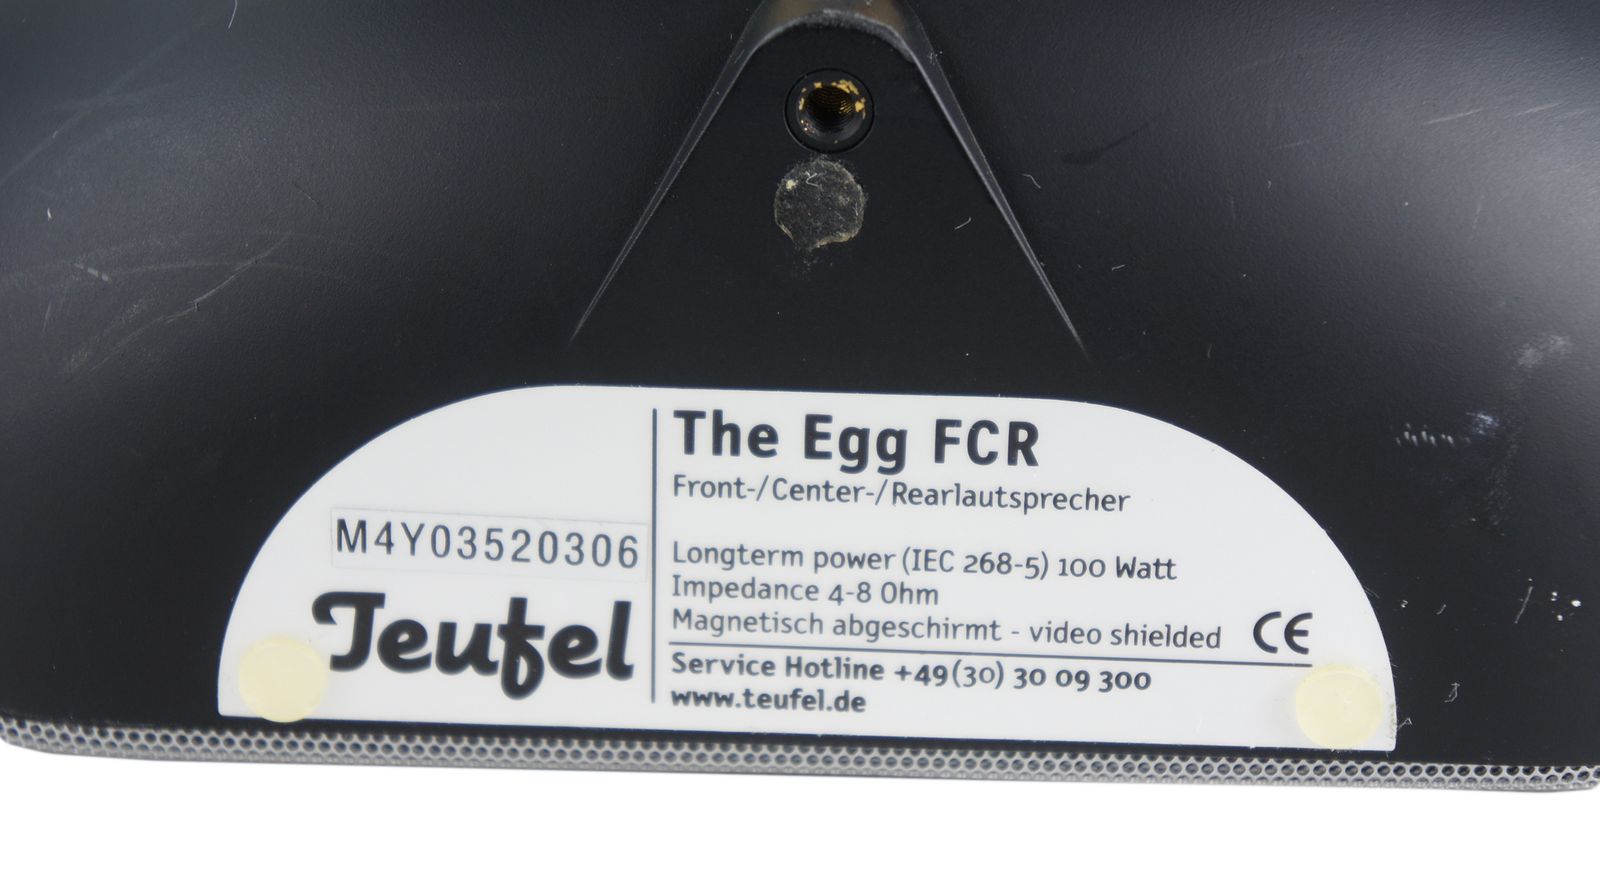 Teufel_The_Egg_FCR_Front-Center-Rear_lautsprecher_04_result